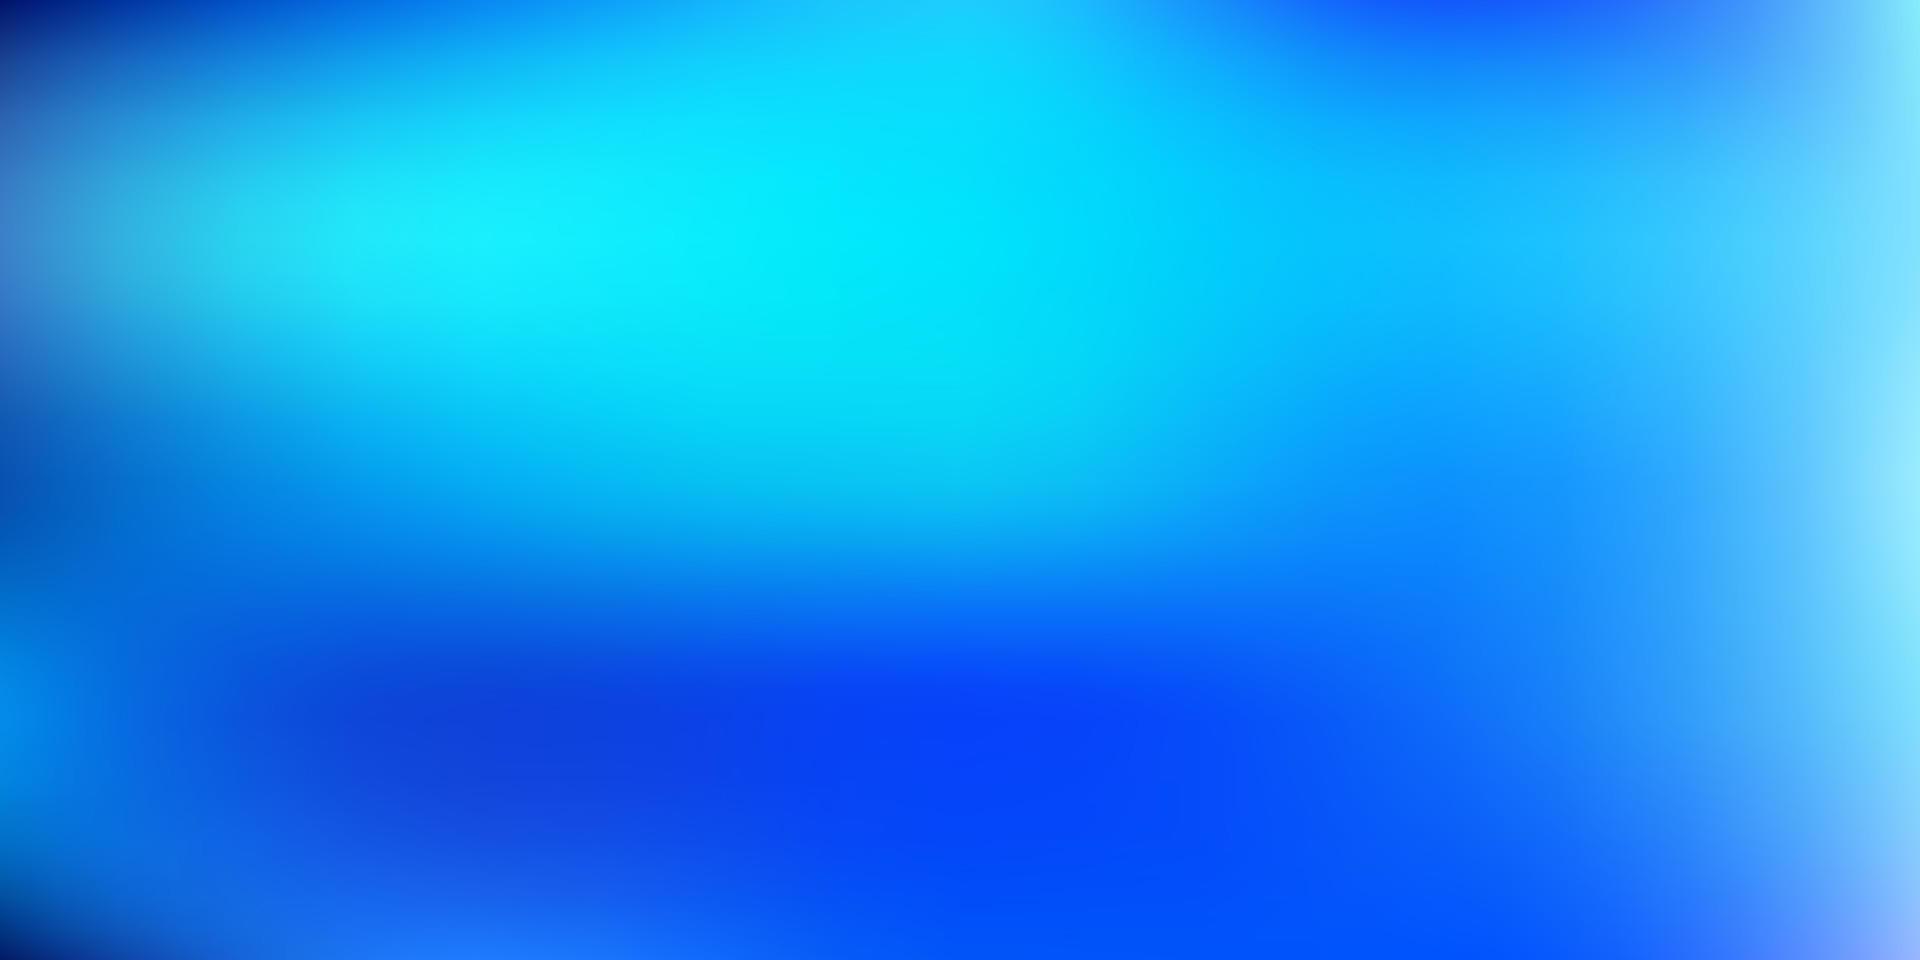 Dark blue vector blurred background.